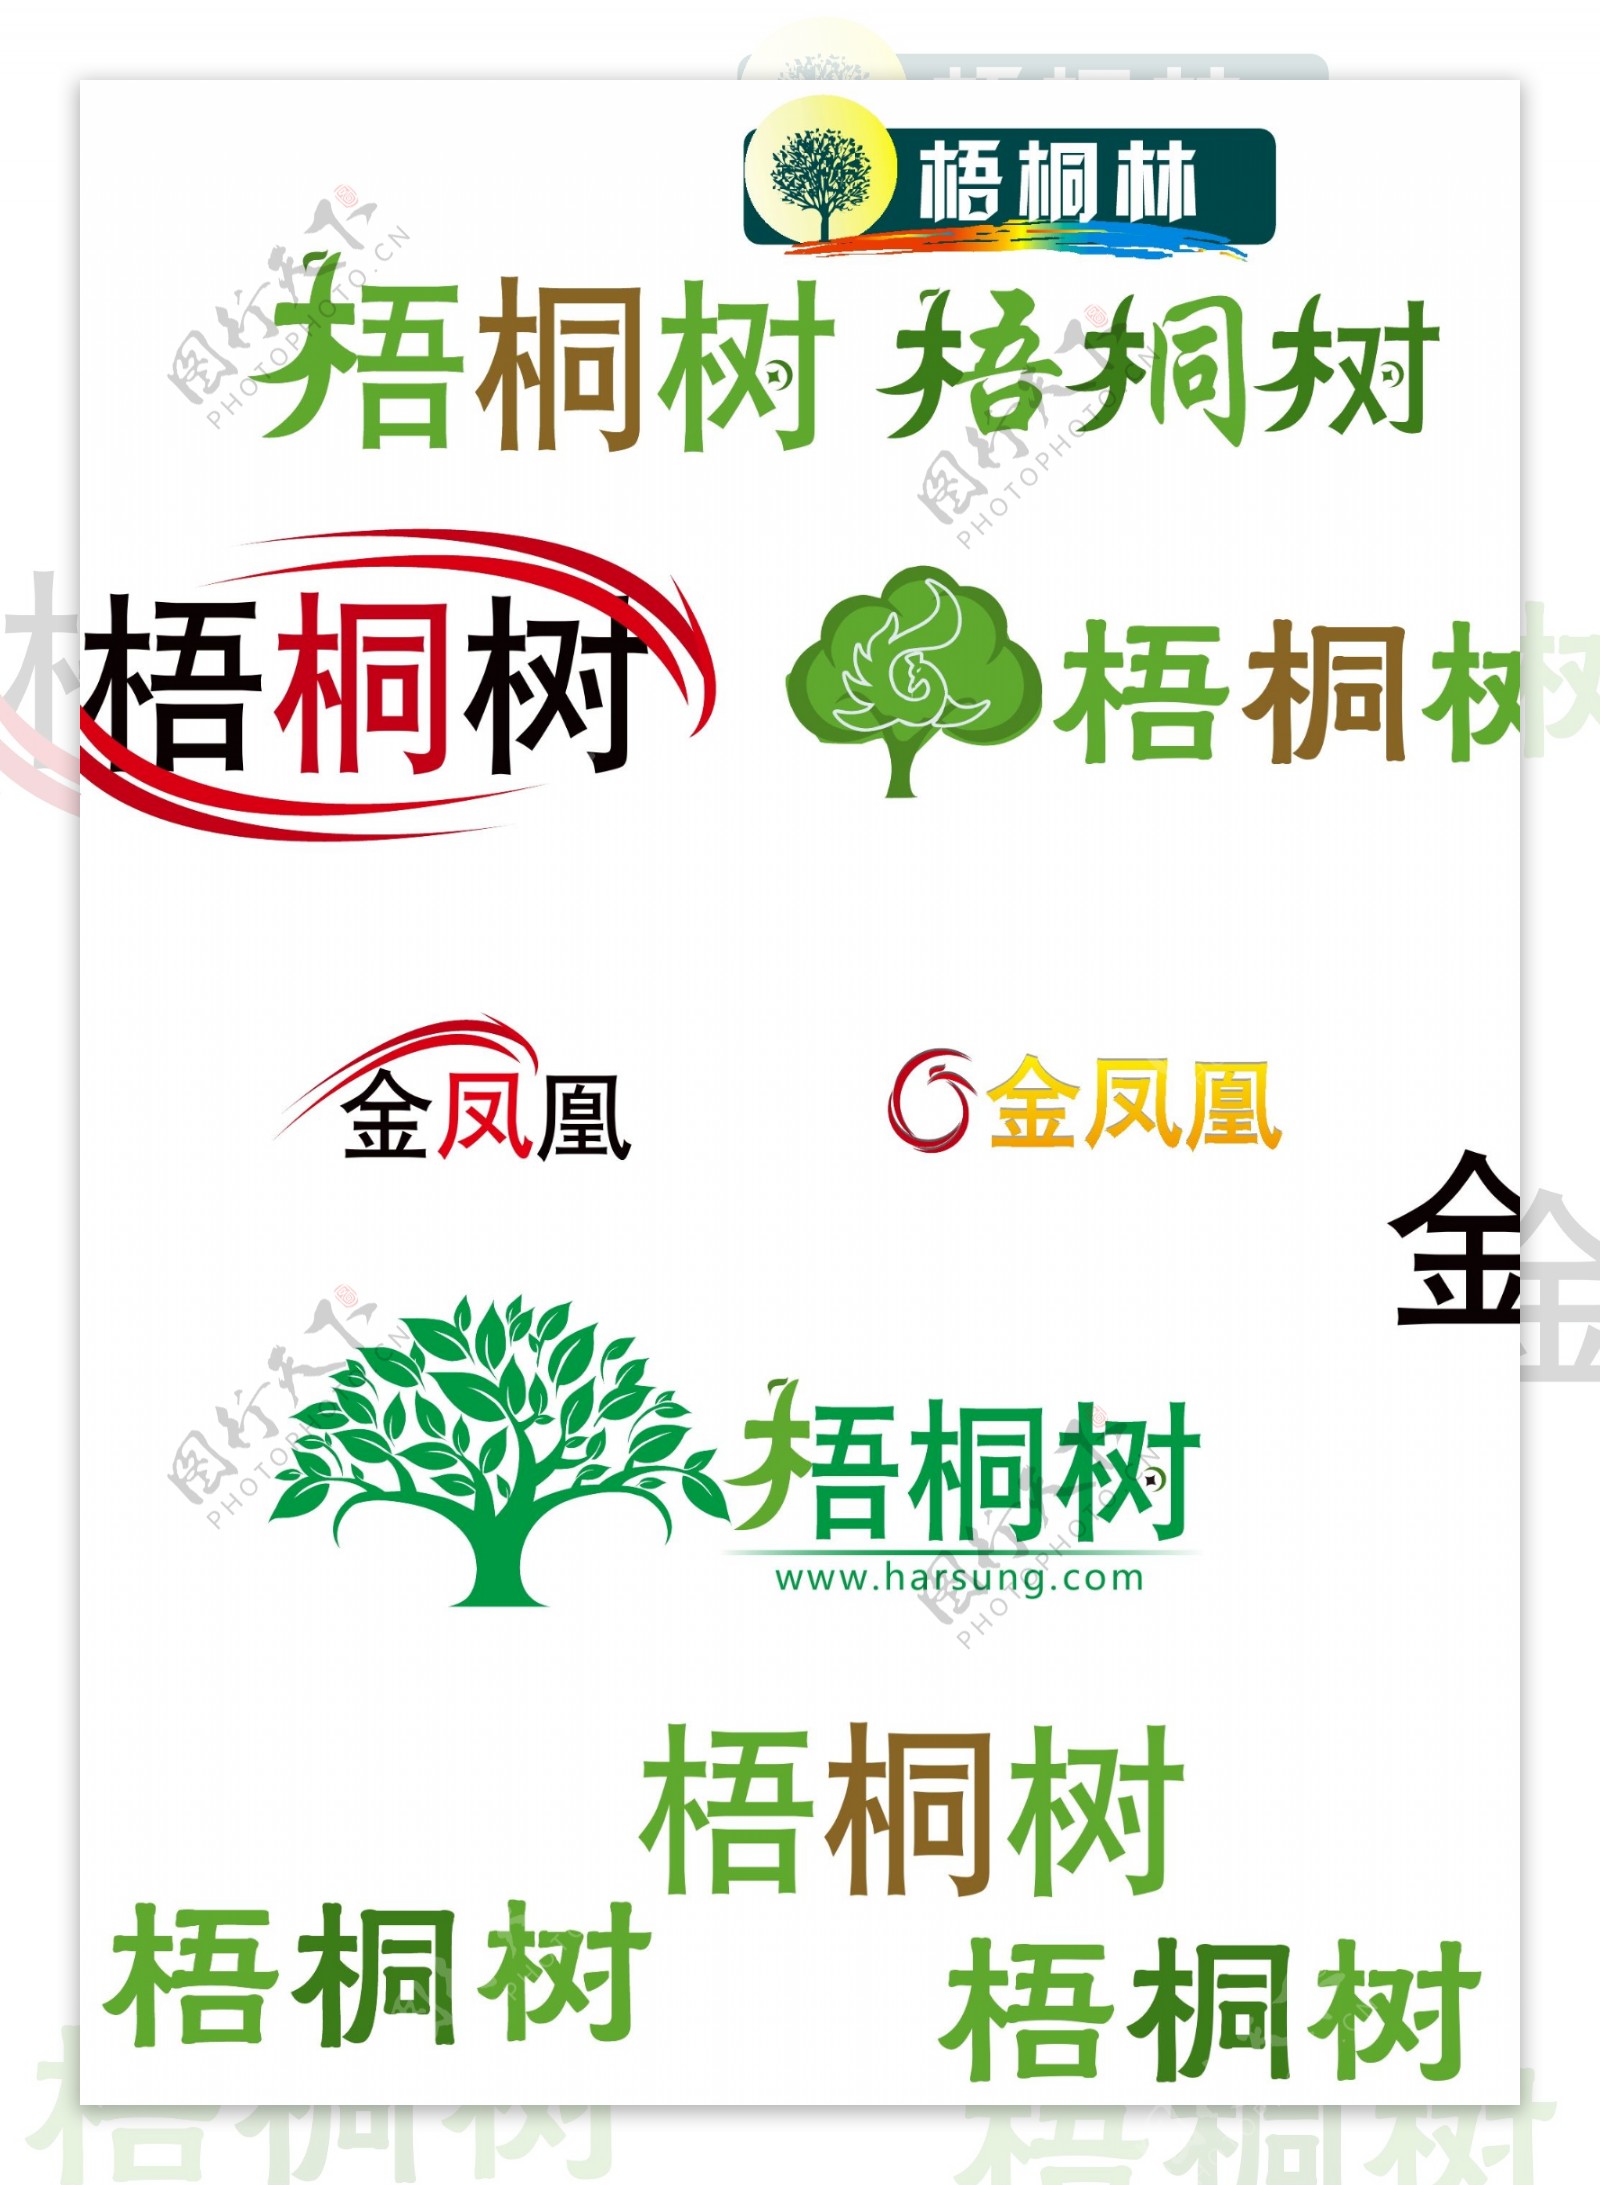 梧桐logo金凤凰图片